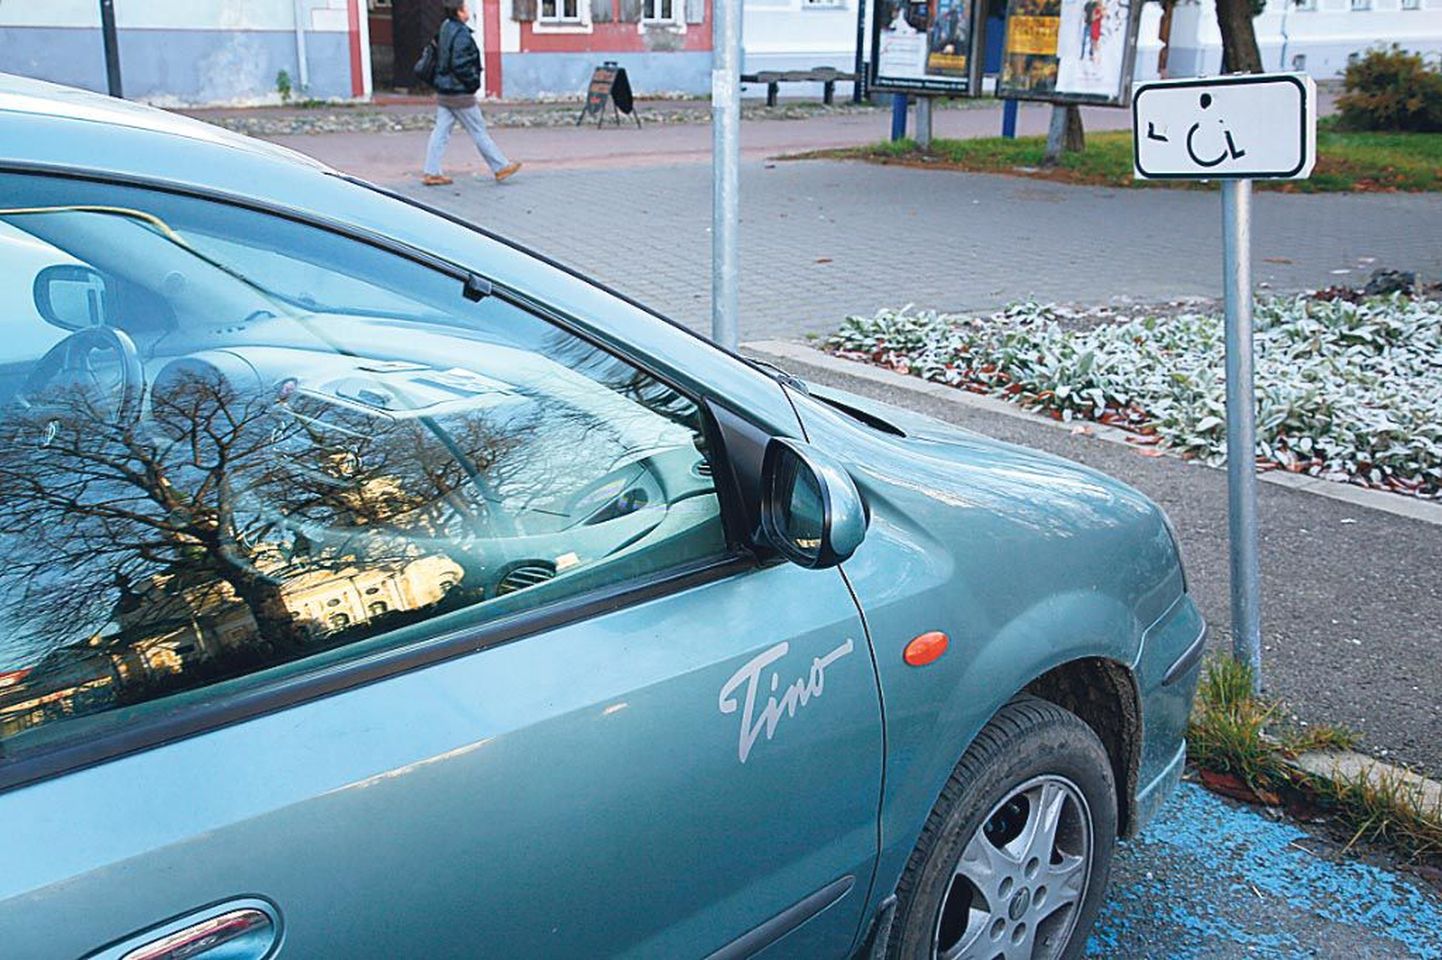 Puudega inimese parkimiskohal seisval autol peab olema nähtav kohaliku omavalitsuse antud luba.